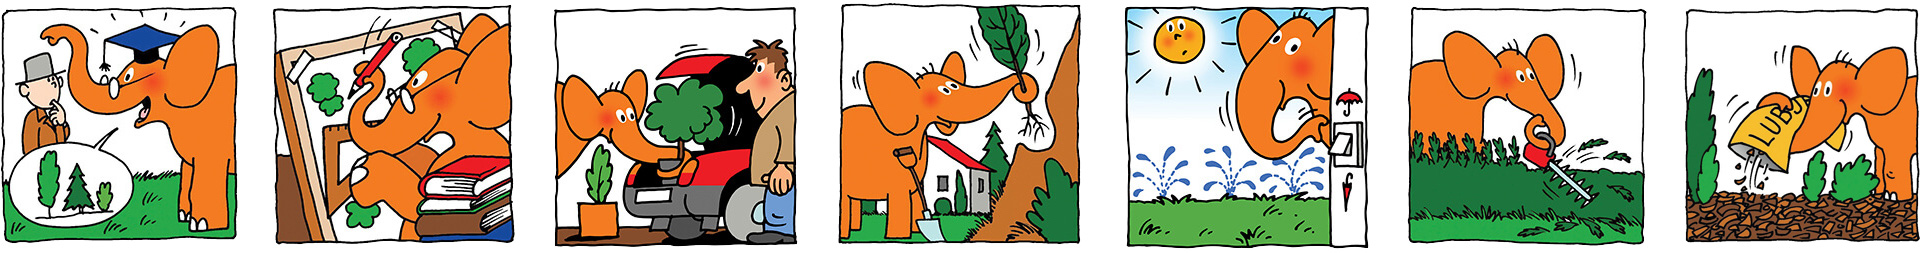 Zgodba o oranžnem slonu